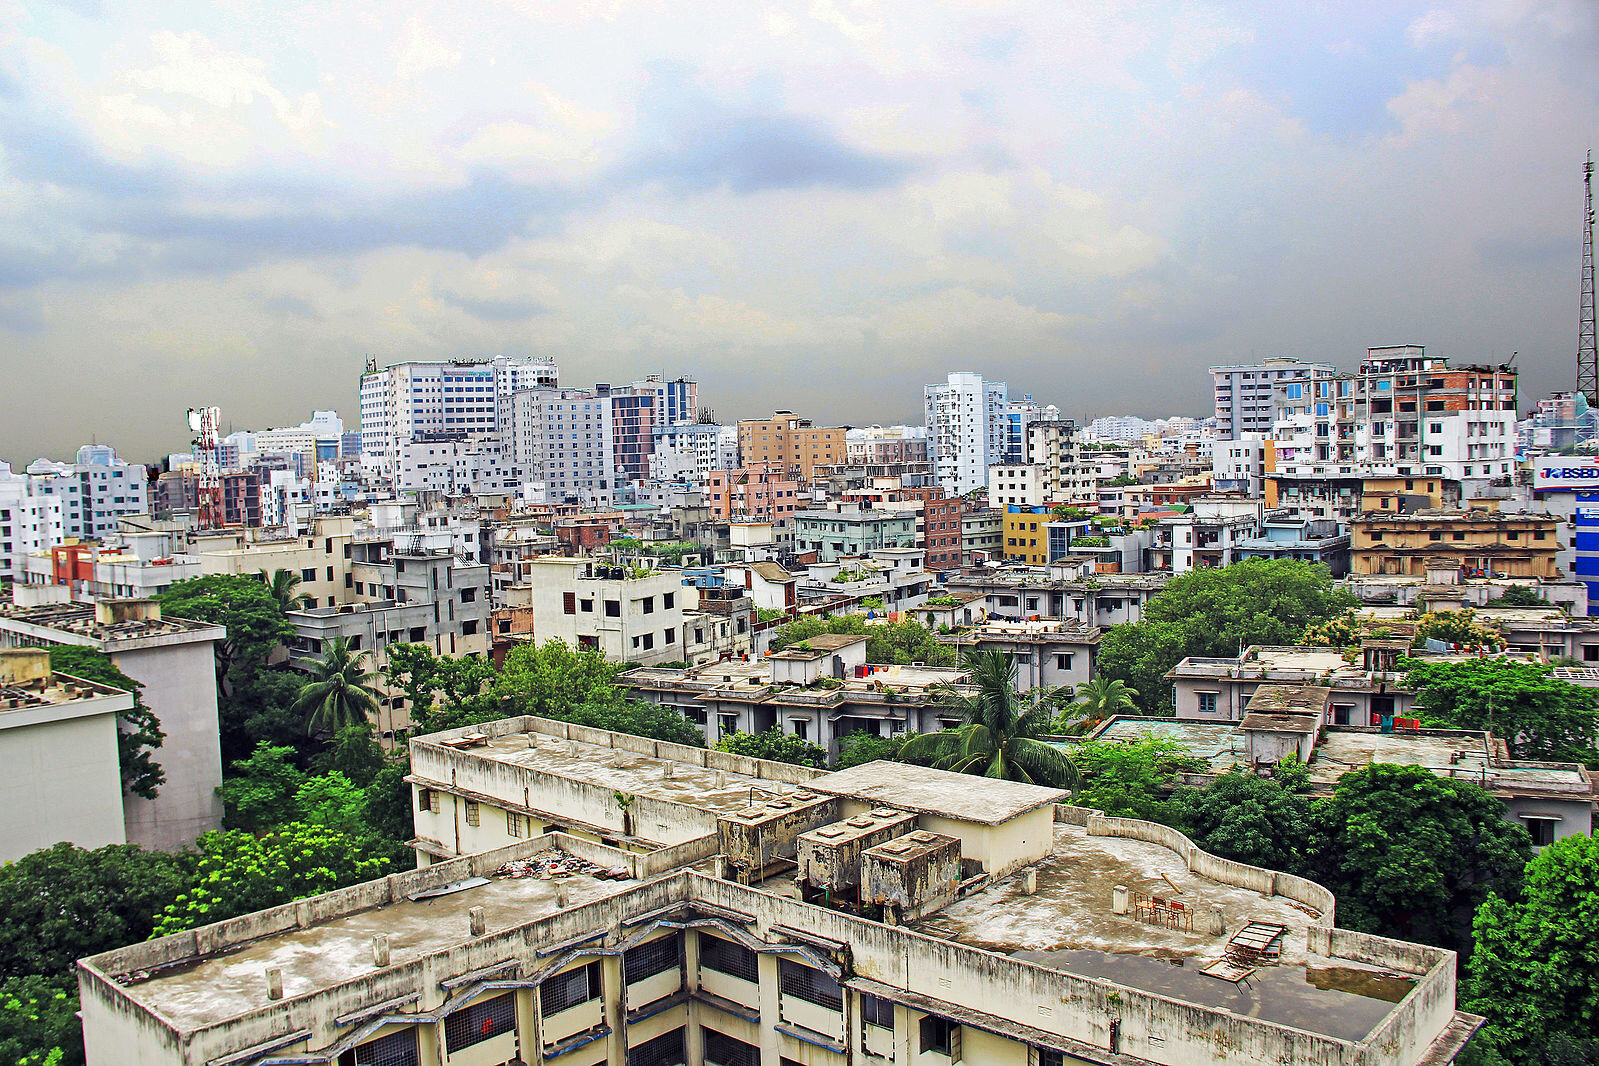 Buildings_of_Dhaka_City.jpg